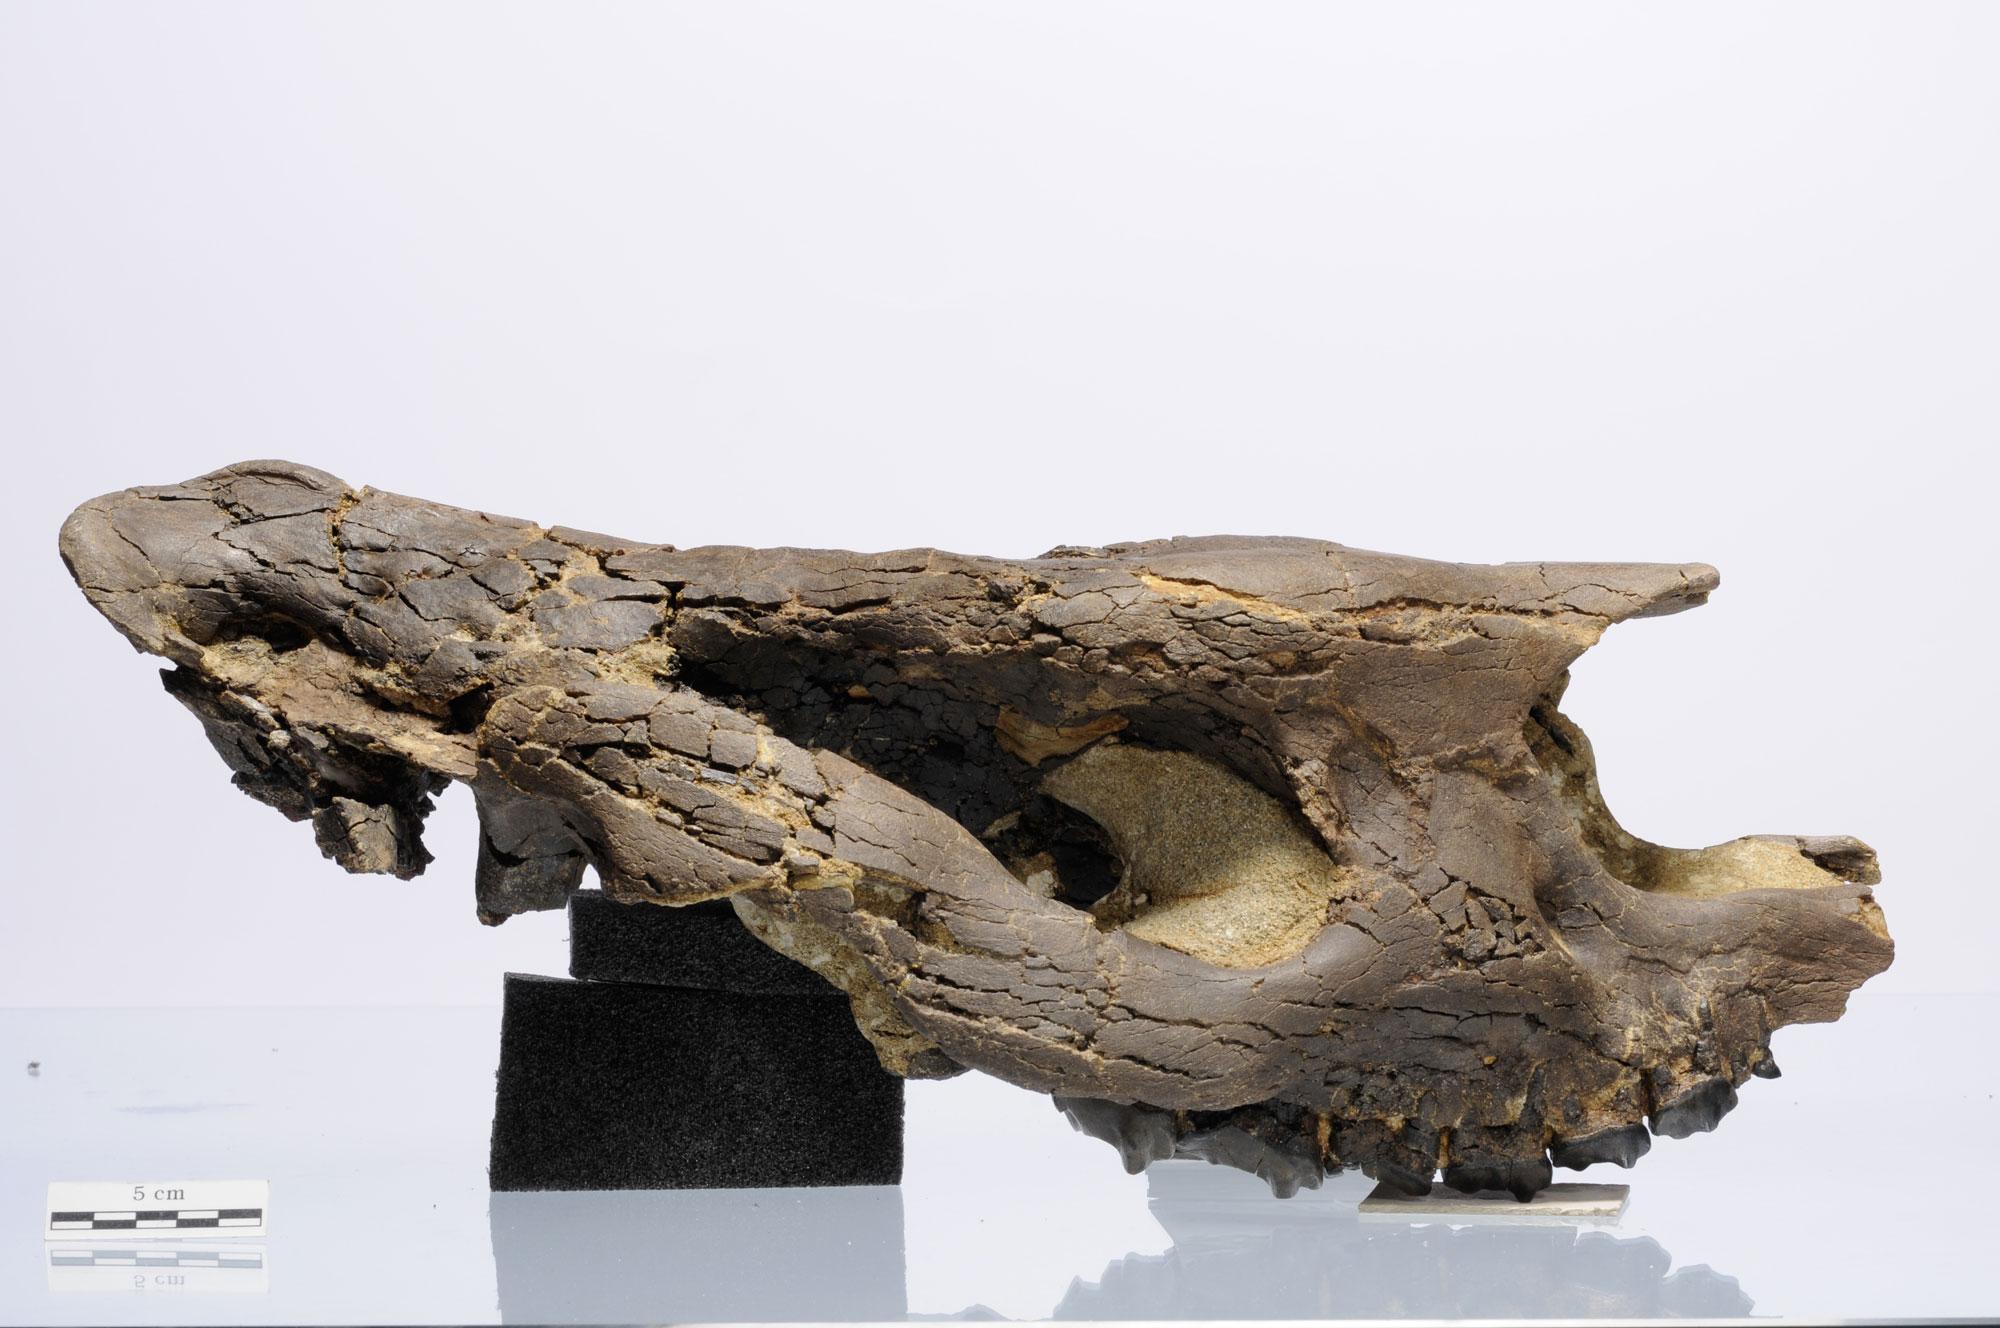 Crâne de rhinocéros, vieux de près de 30 millions d’années, découvert en 2007 sur le tracé autoroutier de la Transjurane. Jurassica [Jurassica]